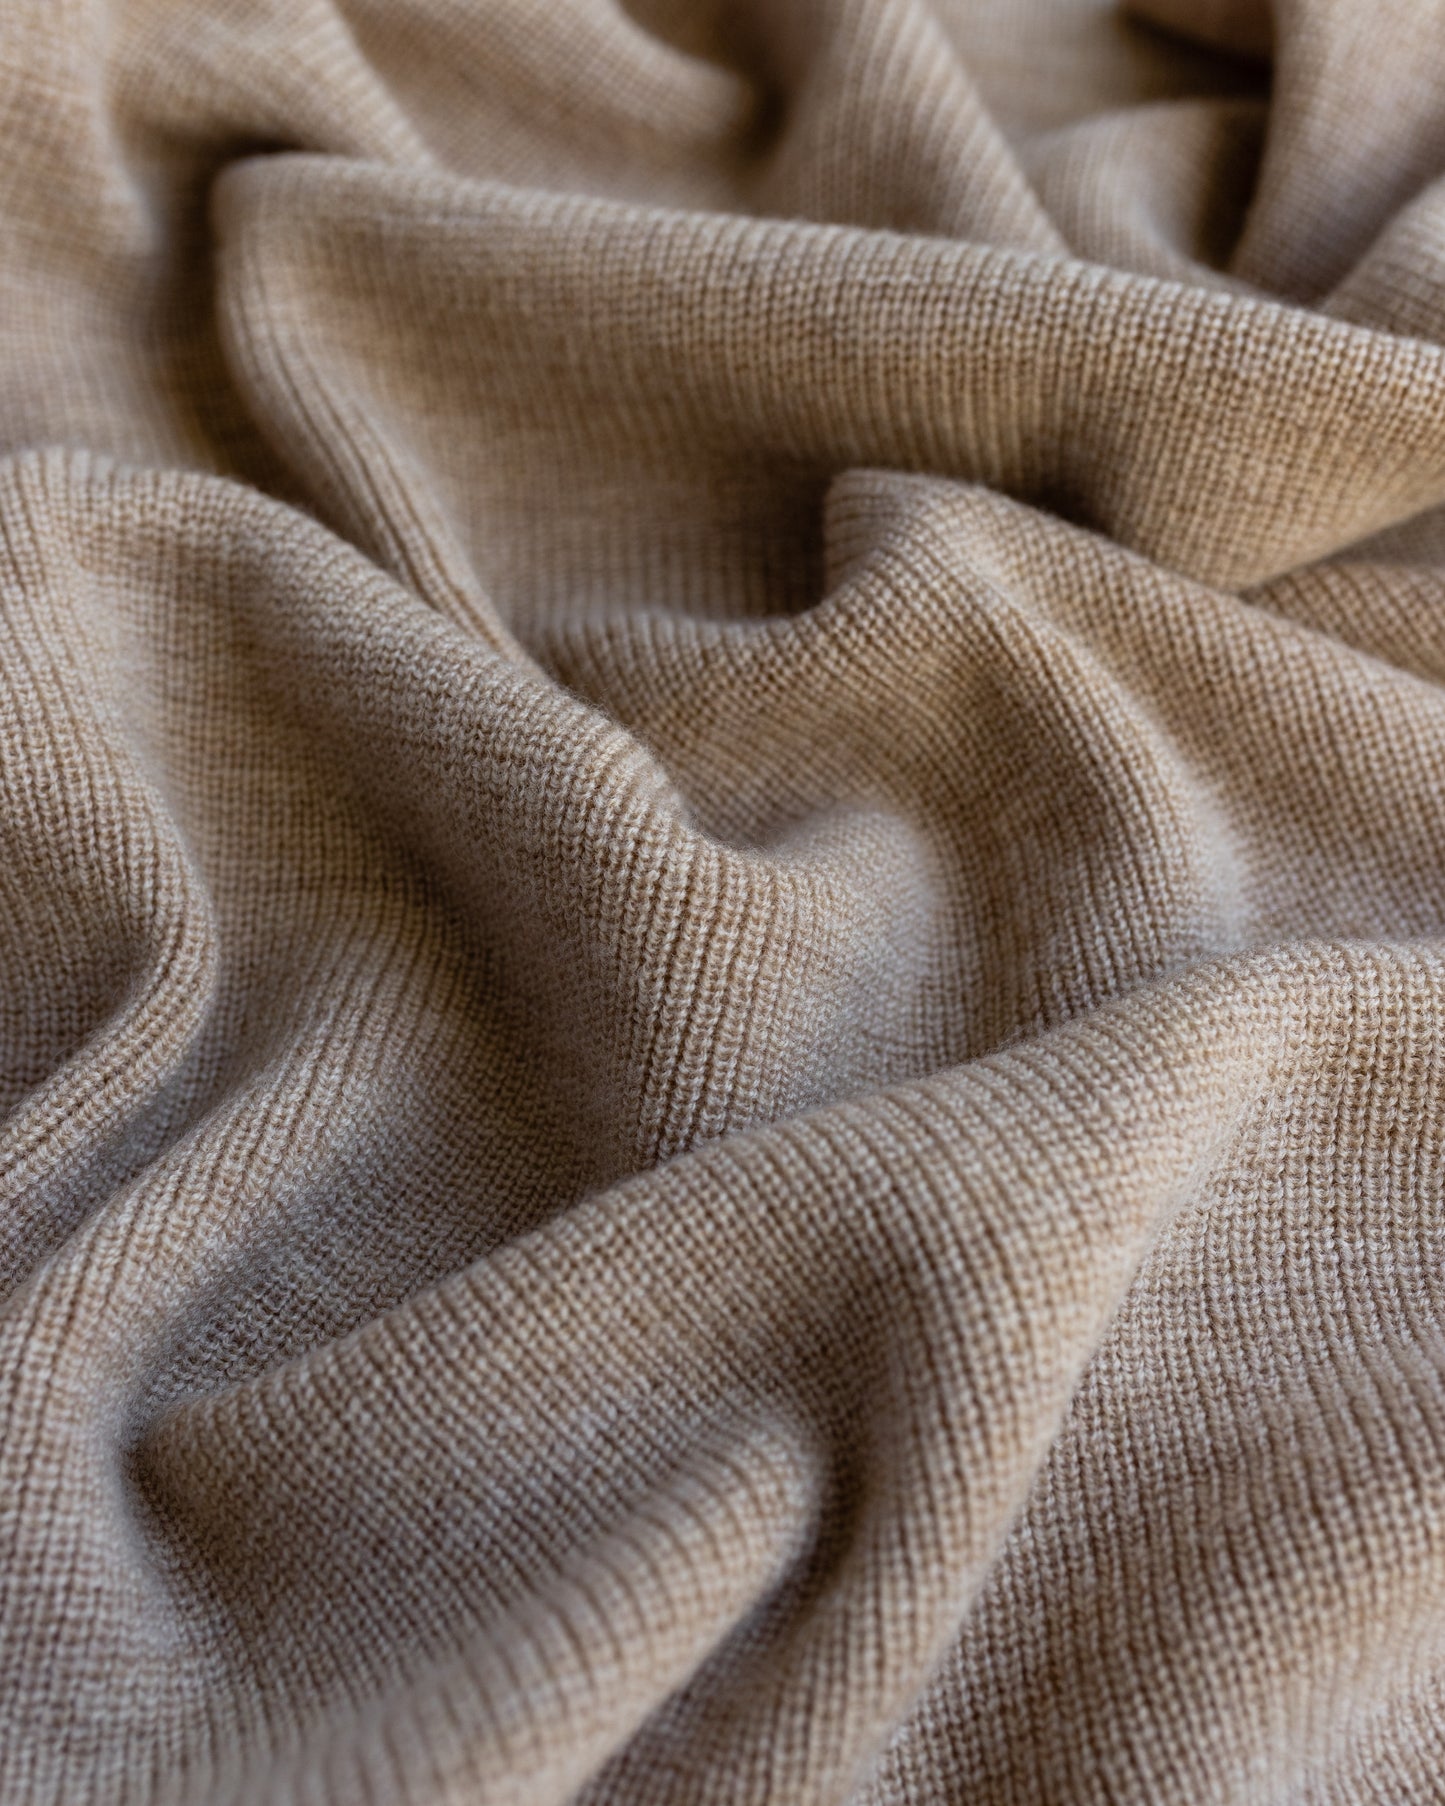 Merino Wool Knit Blanket 'Felix Sand'